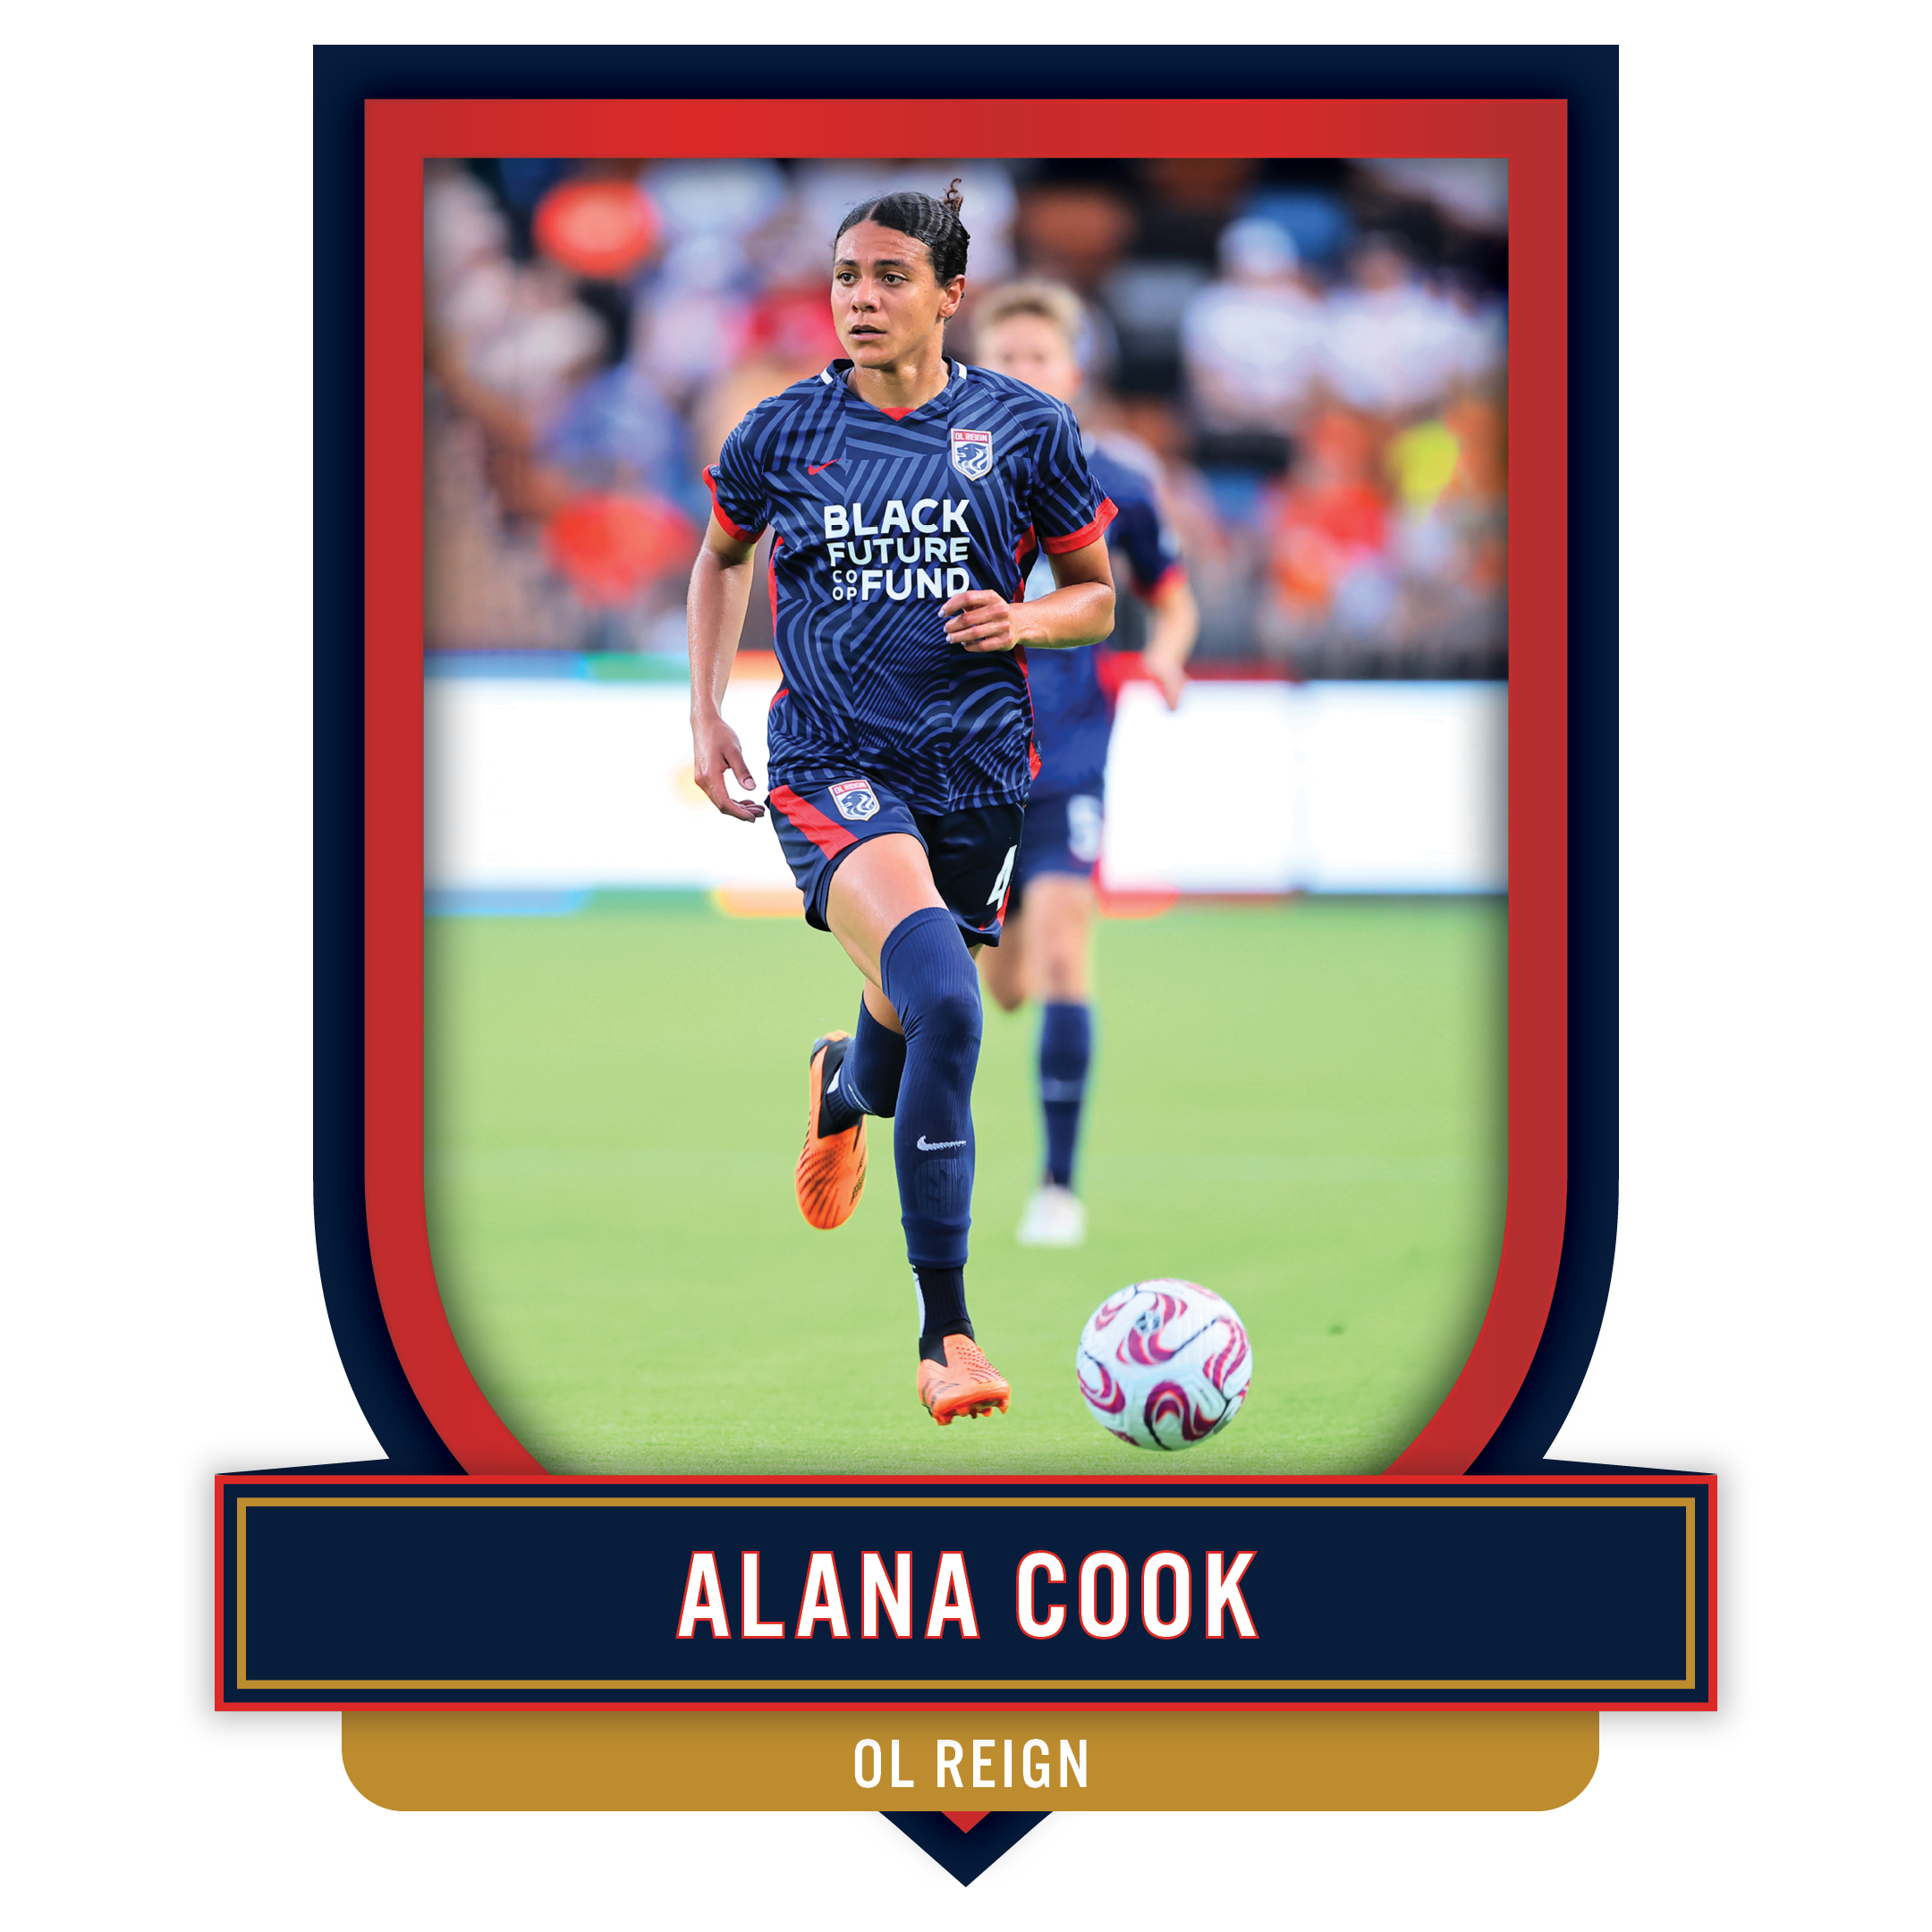 Alana Cook asset